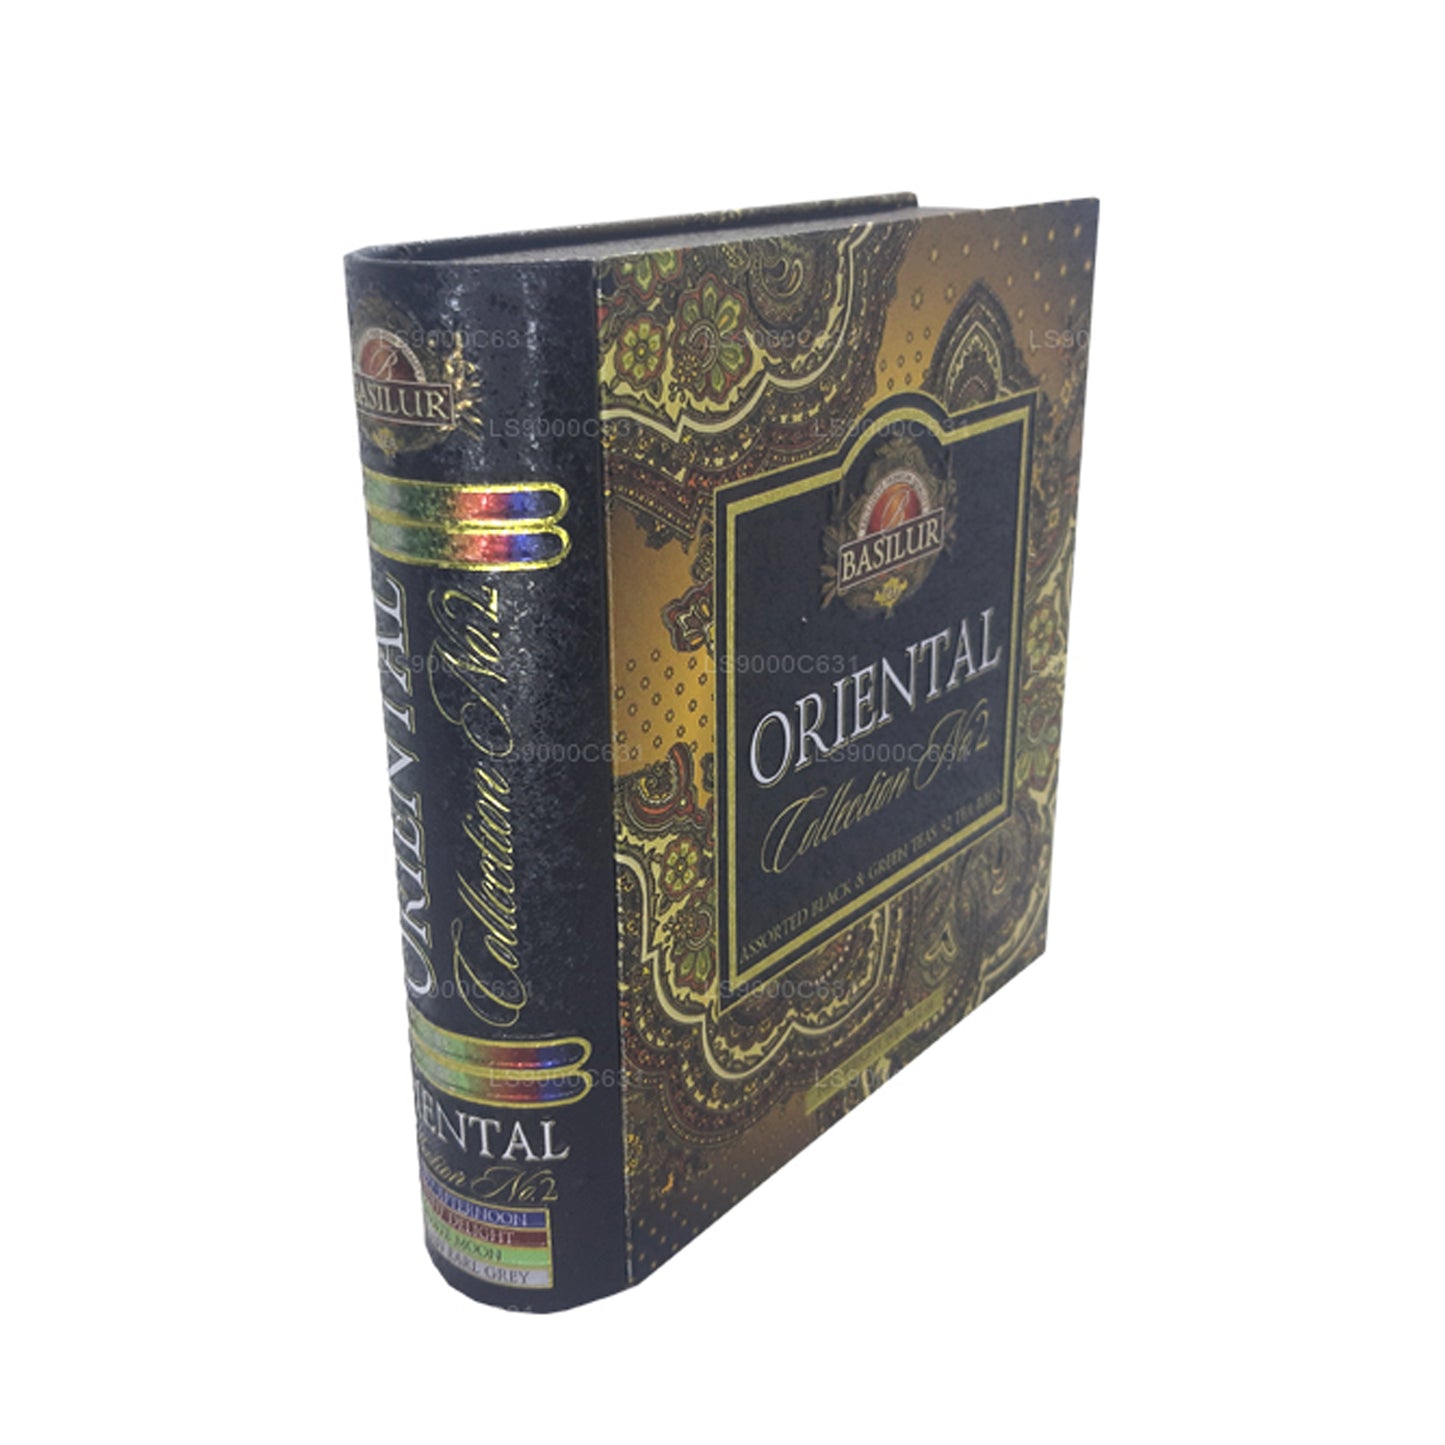 Livre à thé Basilur Oriental Collection Vol.2 (60 g) 32 sachets de thé